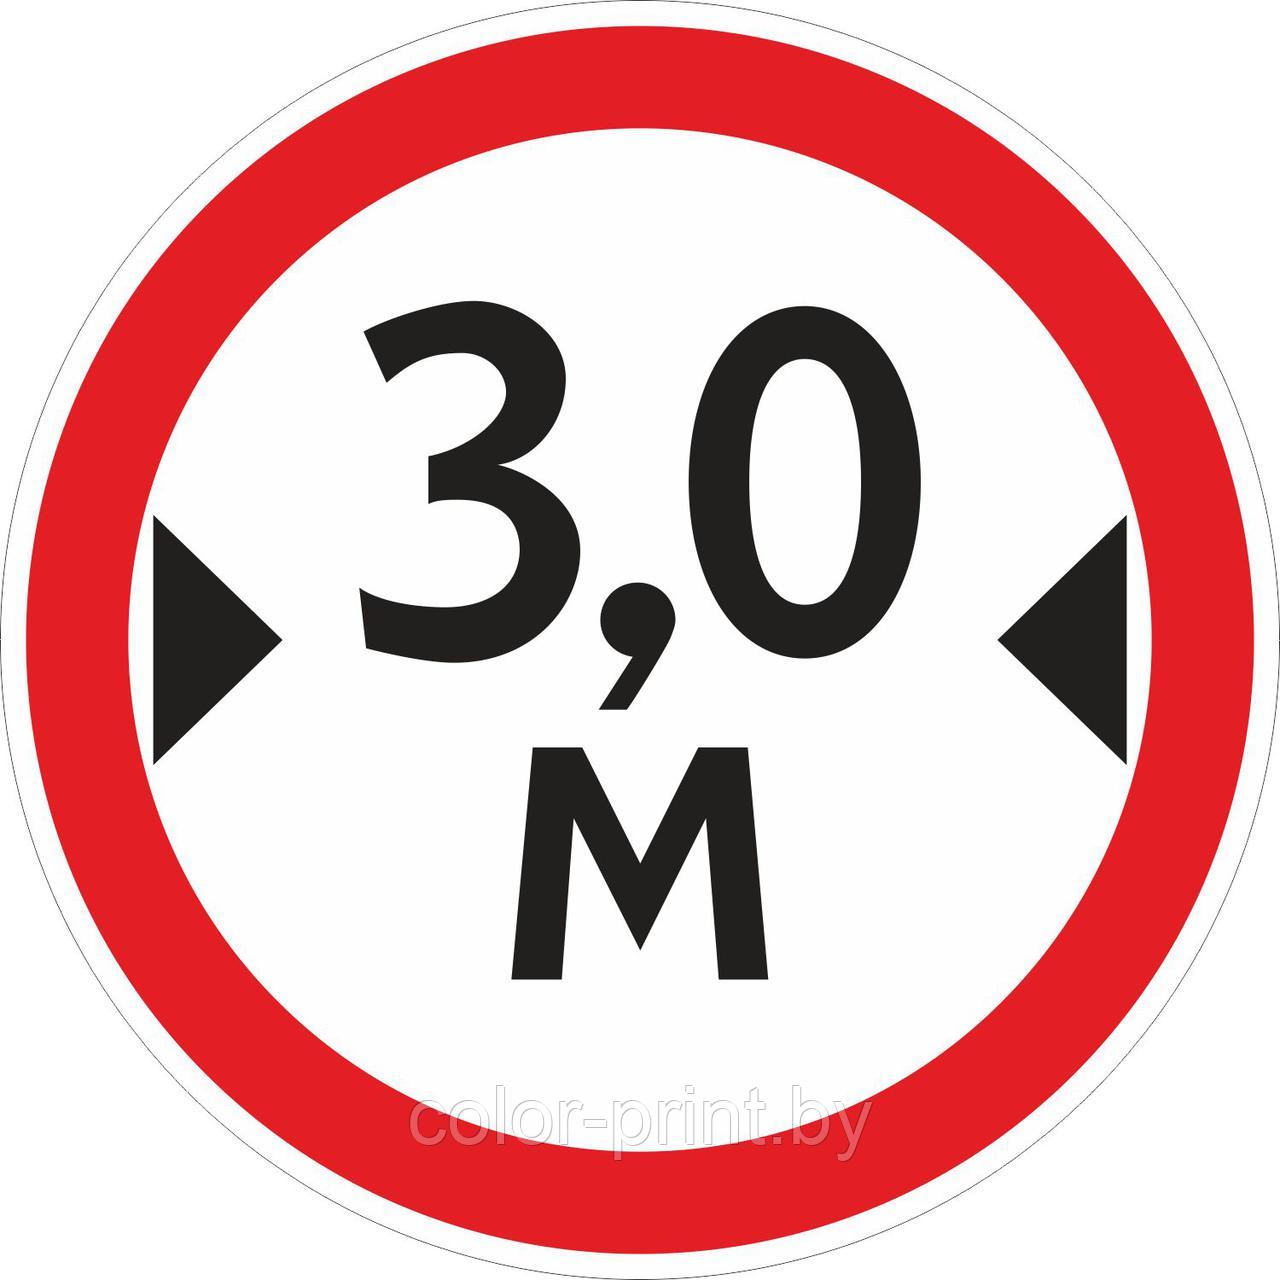 Наклейка ПВХ "Ограничение ширины проезда 3.0м" 500*500мм